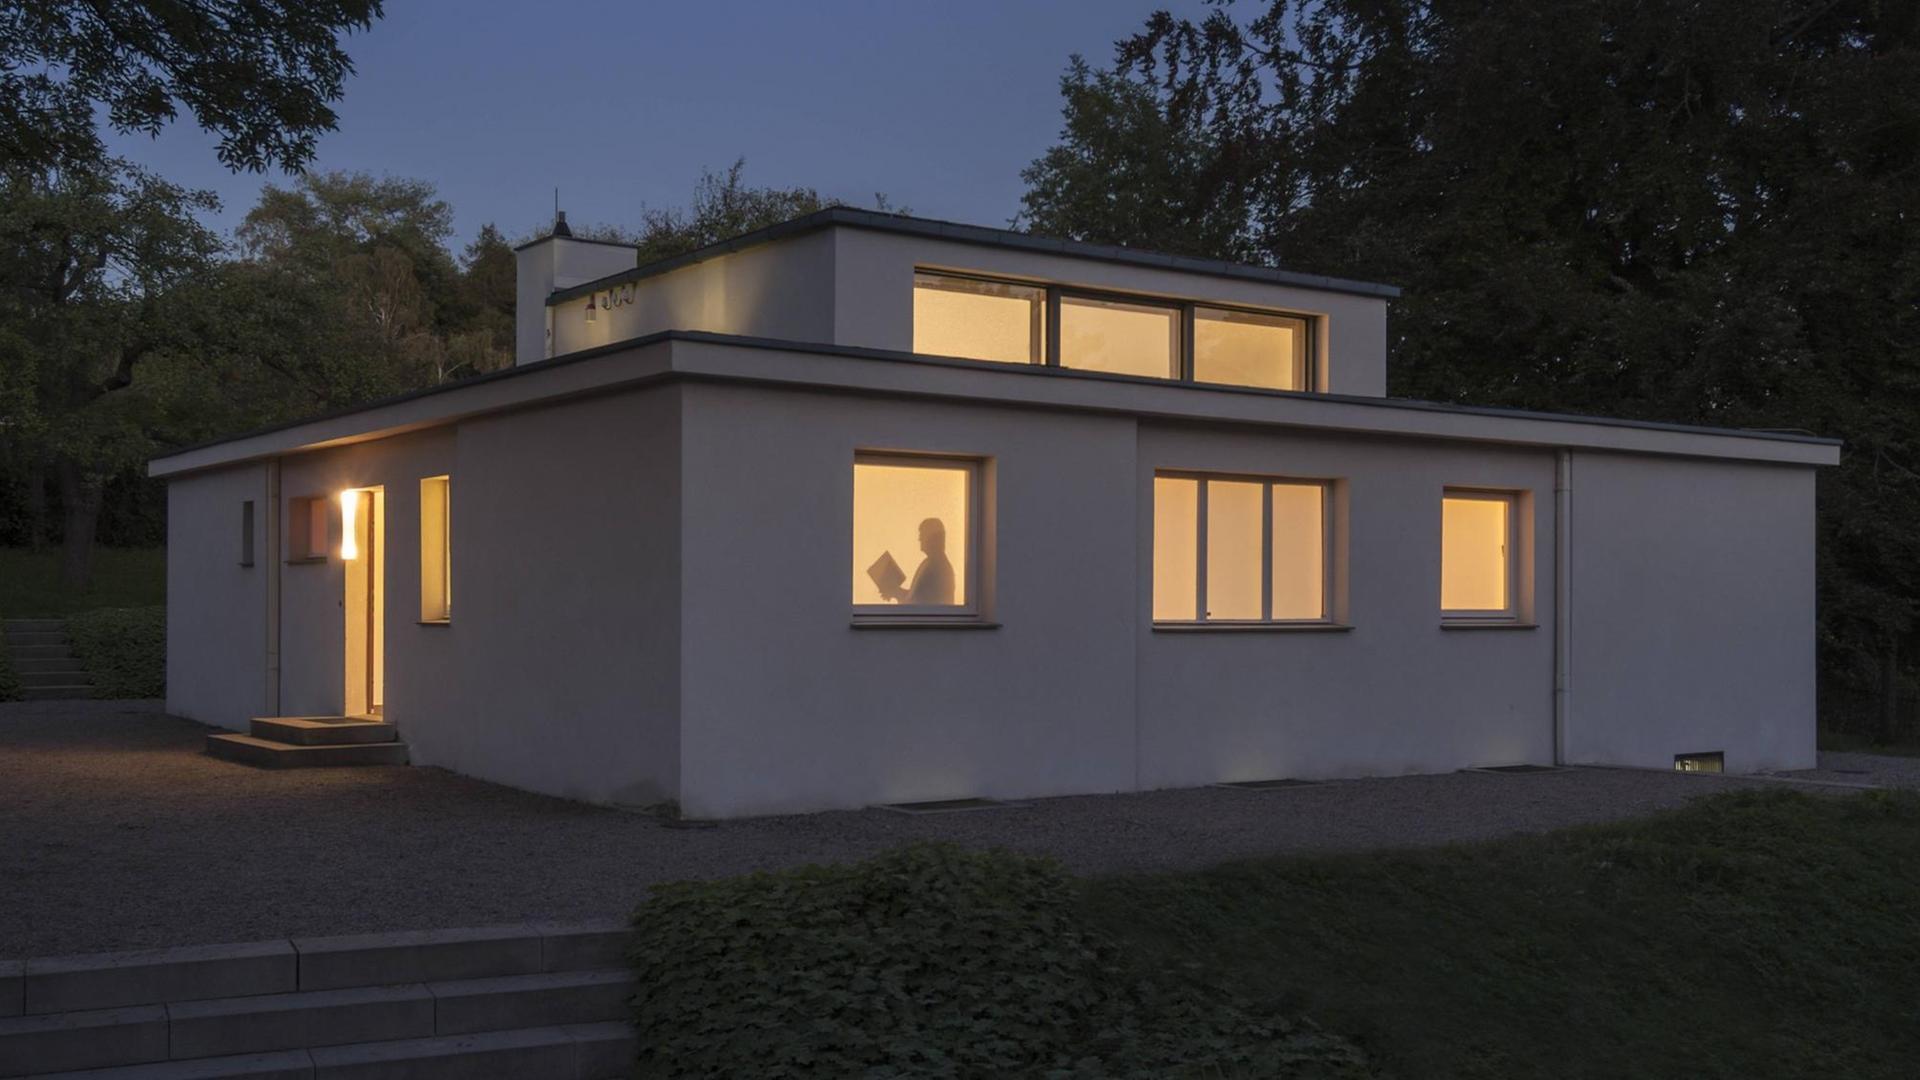 Haus am Horn in Weimar: Von Georg Muche zur Bauhausausstellung 1923 errichtetes Musterhaus. Das Haus am Horn ist UNESCO-Weltkulturerbe und das älteste Haus der Bauhaus-Architektur überhaupt.